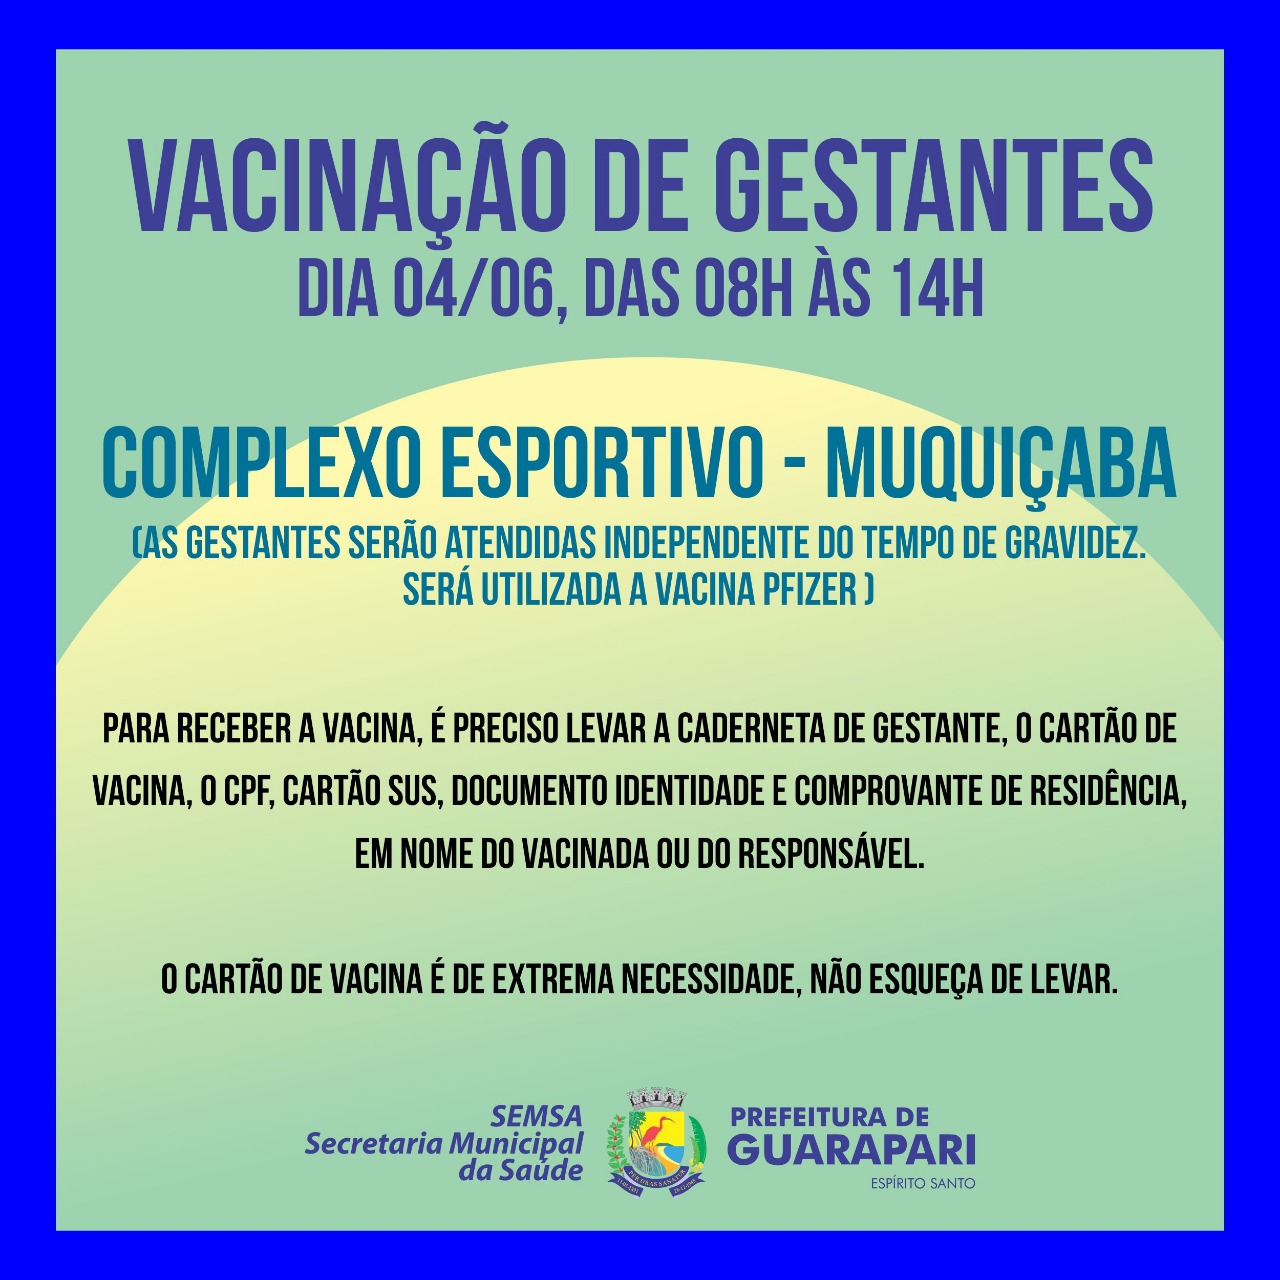 Vacina Covid-19: Prefeitura de Guarapari realiza ação de vacinação para gestantes nesta sexta-feira 